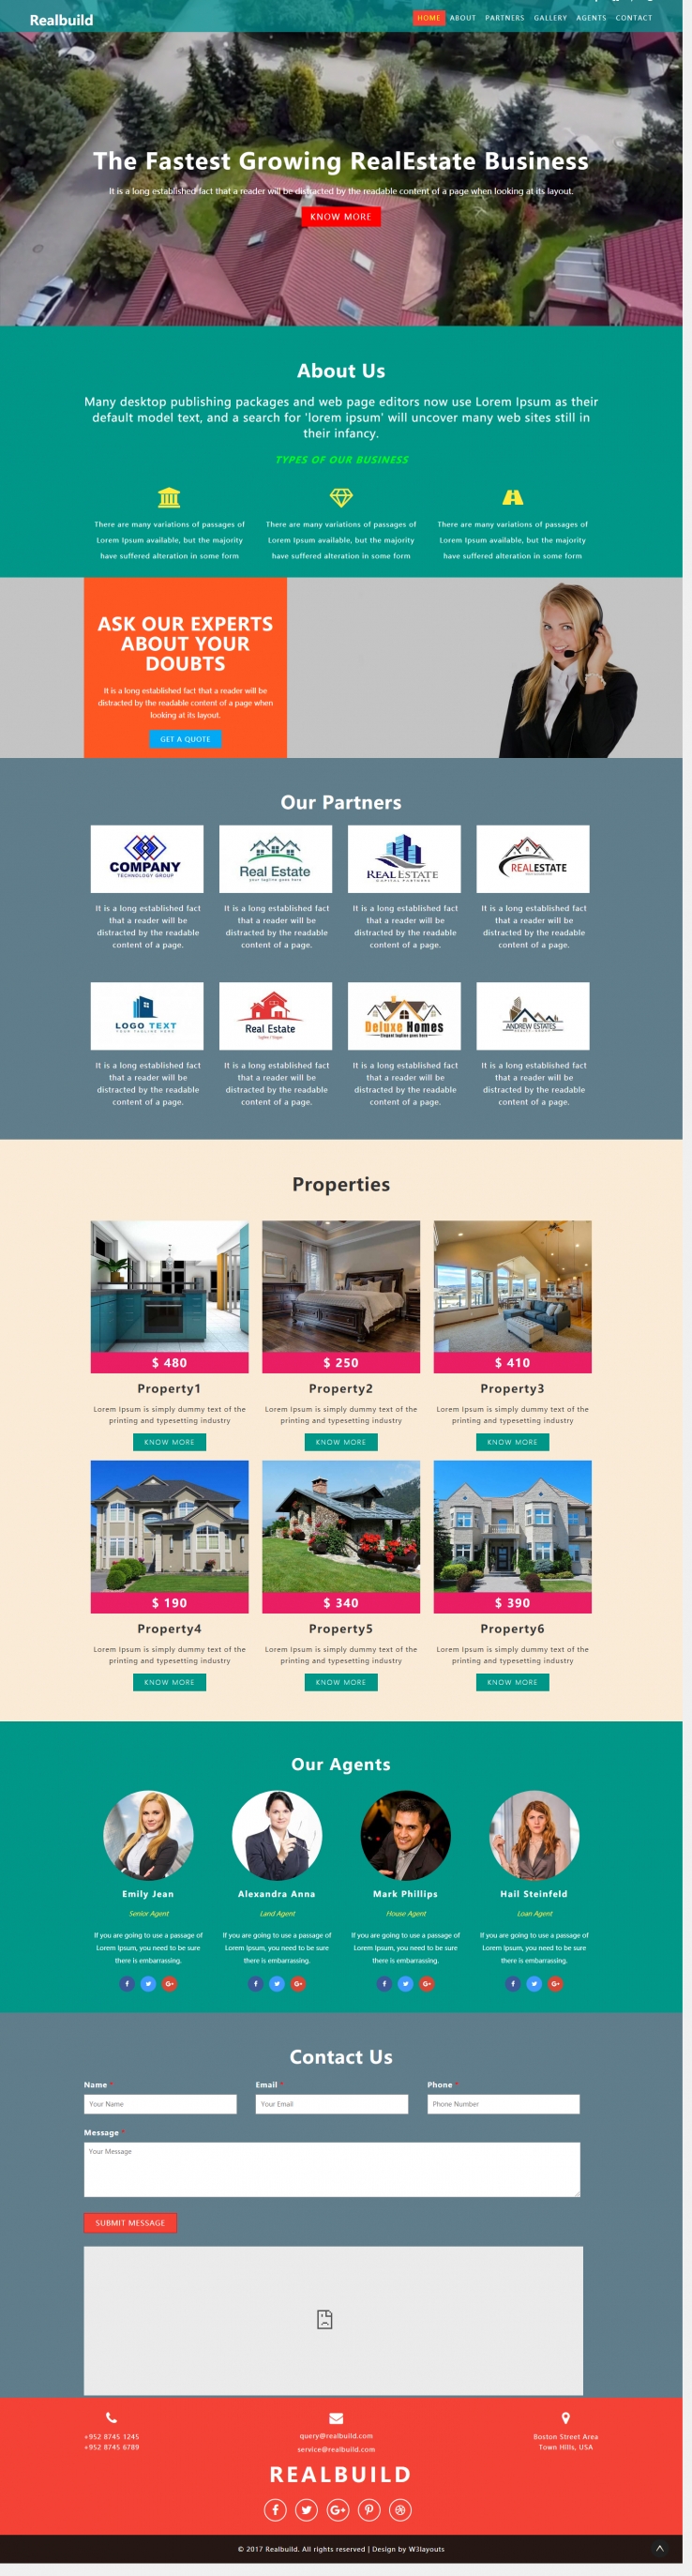 红色简洁风格的房产交易机构整站网站源码下载